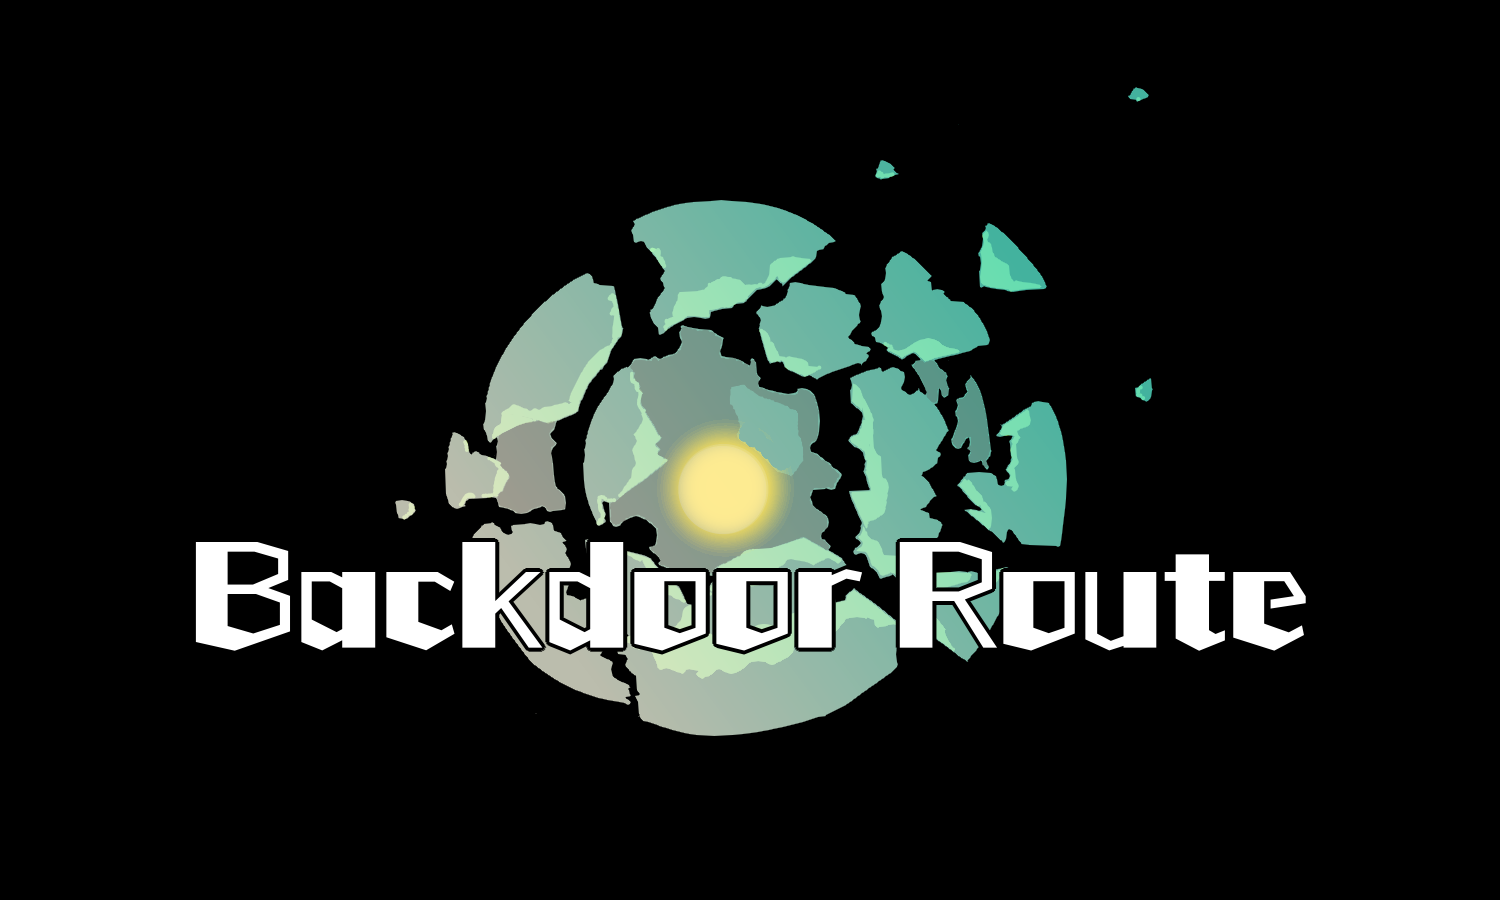 Backdoor Route